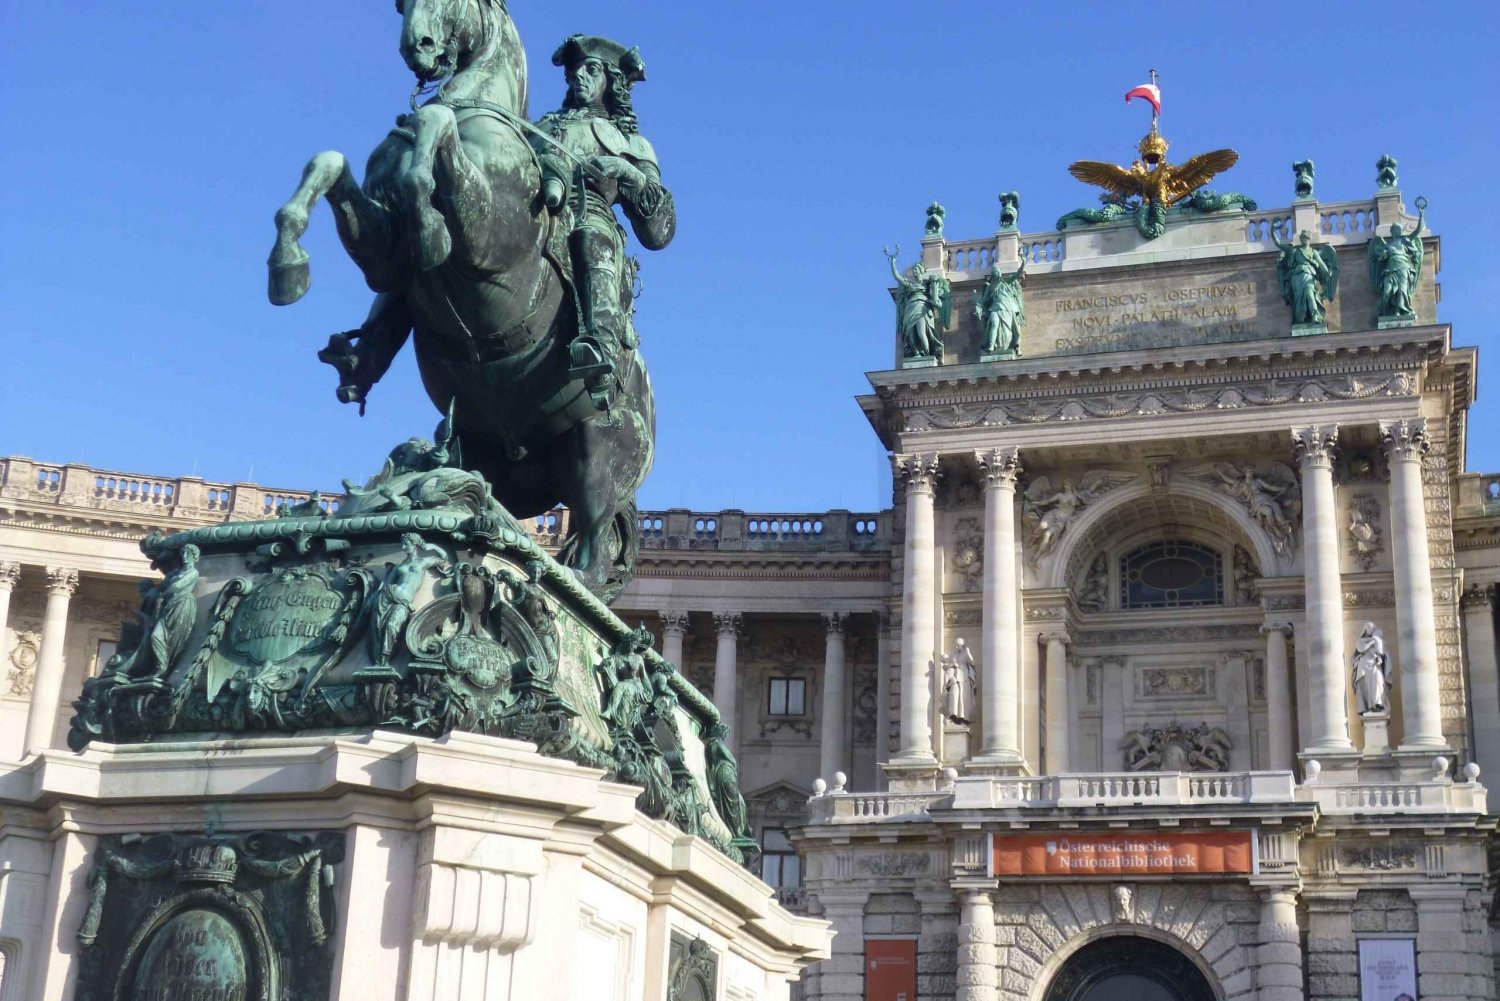 Viena: excursão a pé guiada pela história imperial